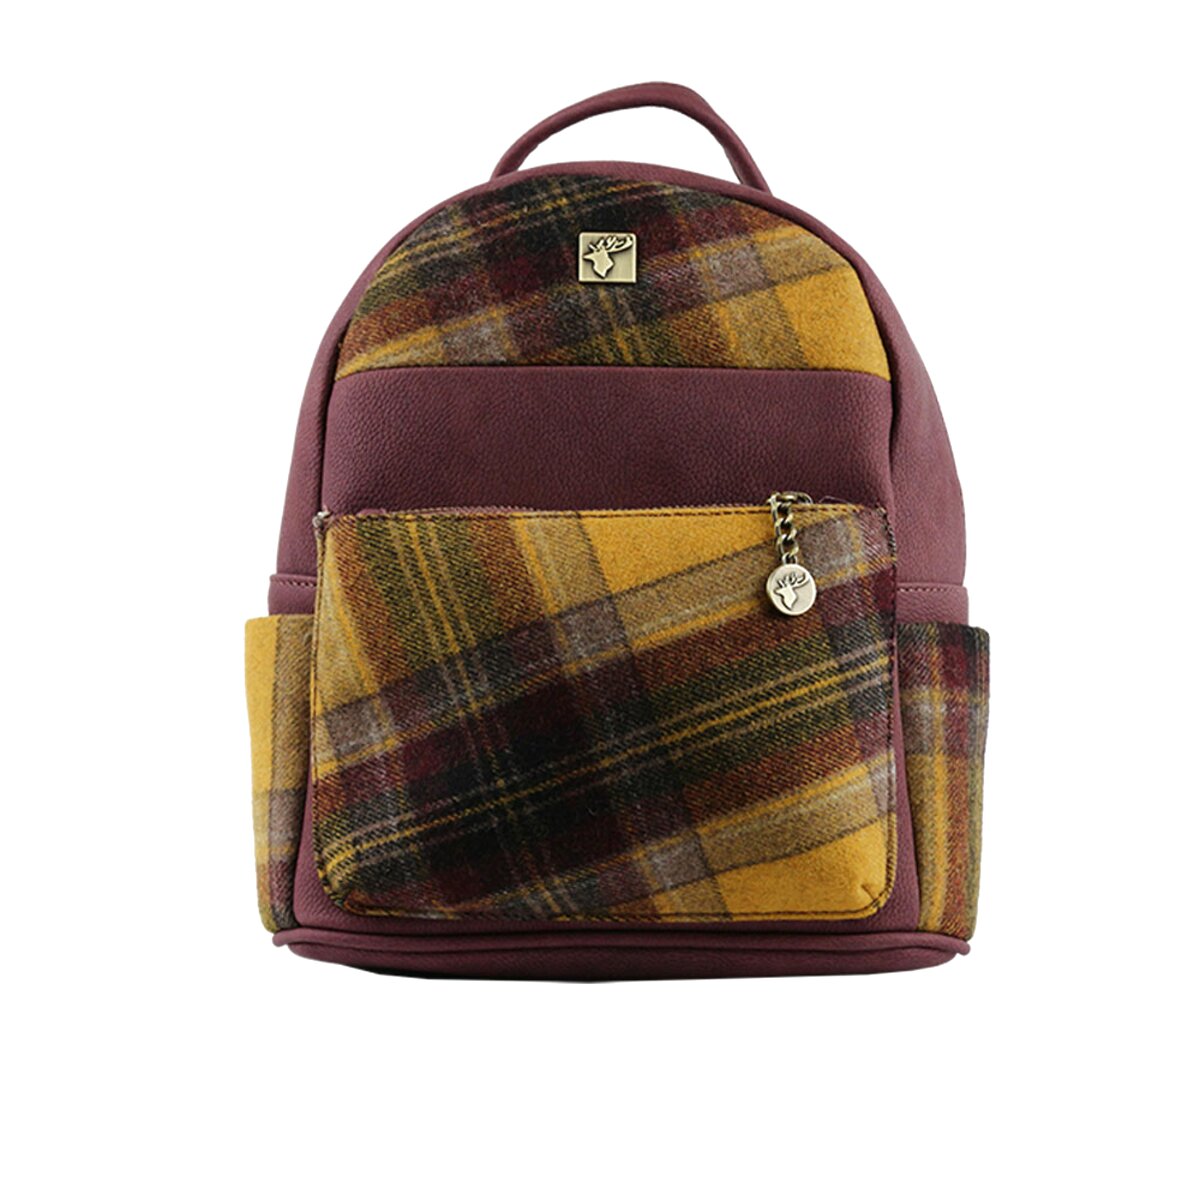 Tweed Backpack for sale in UK | 60 used Tweed Backpacks